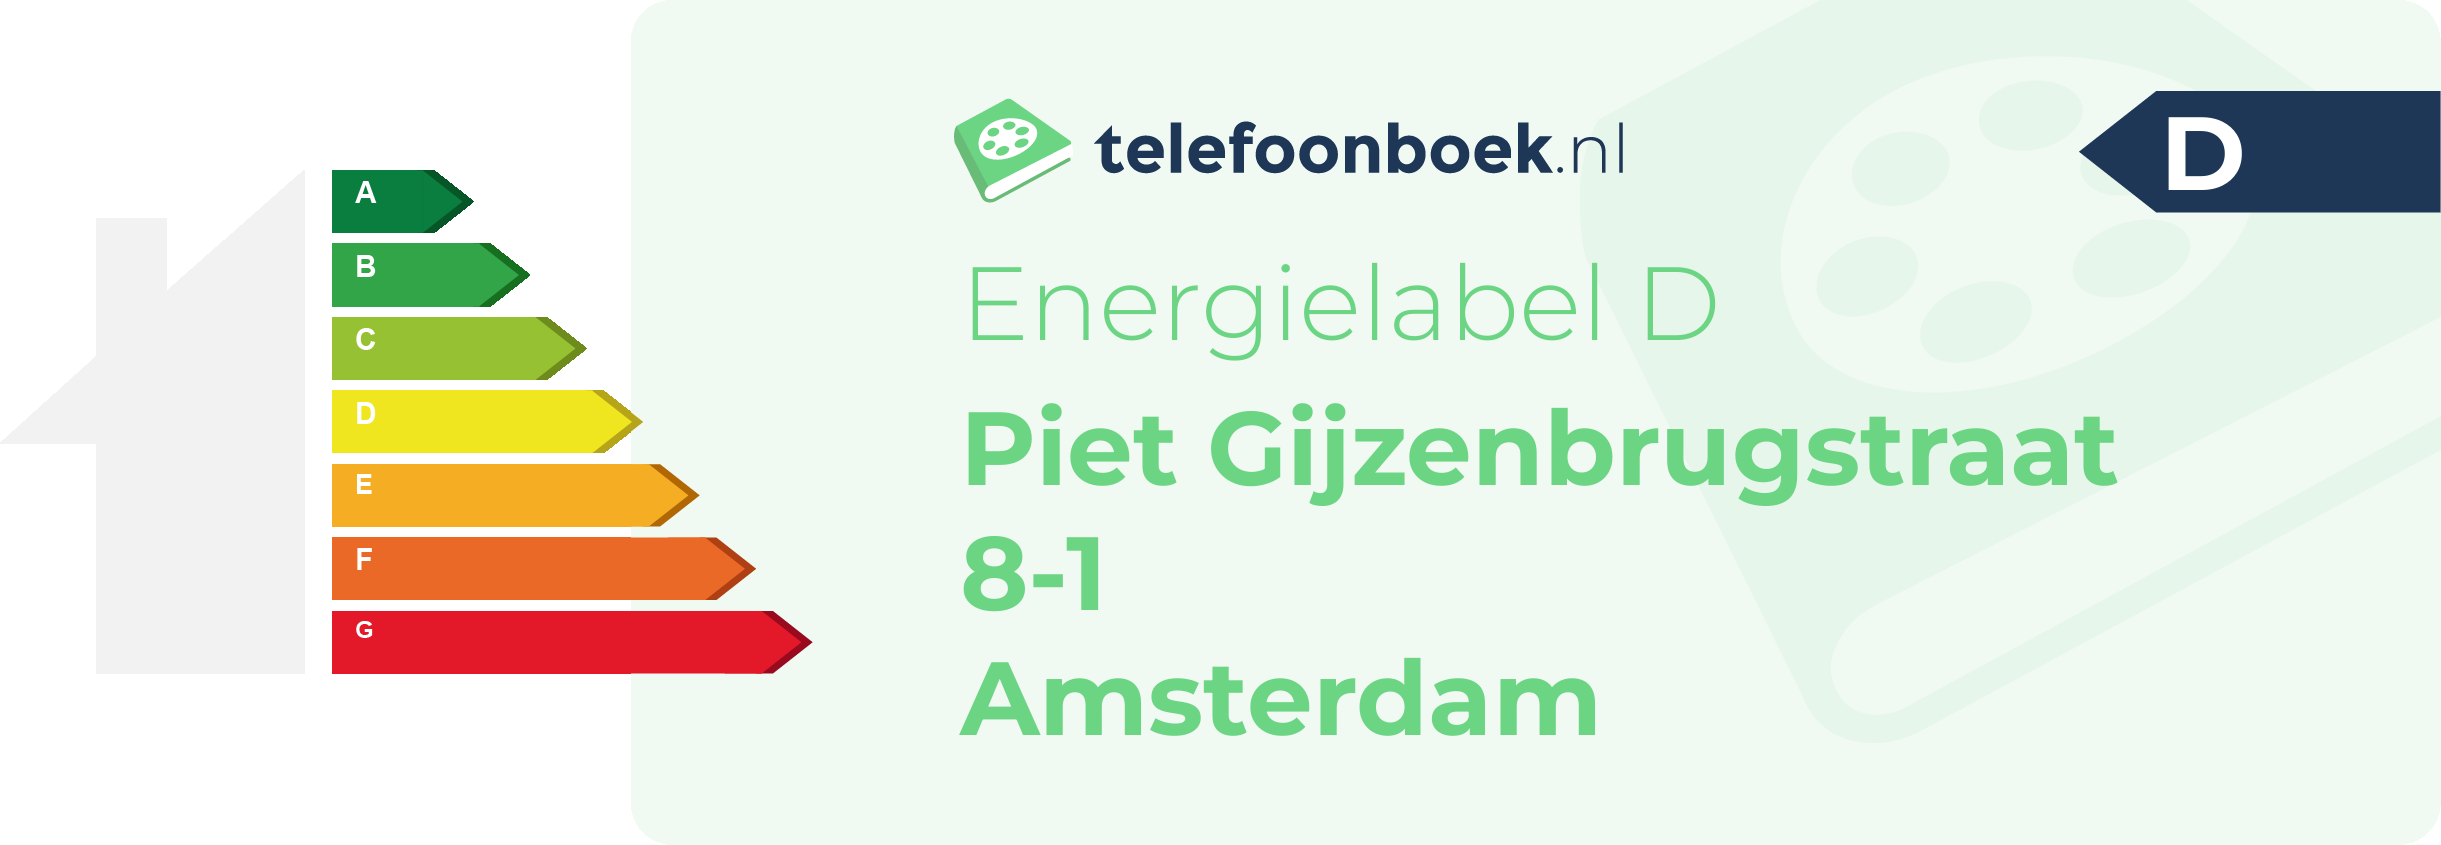 Energielabel Piet Gijzenbrugstraat 8-1 Amsterdam